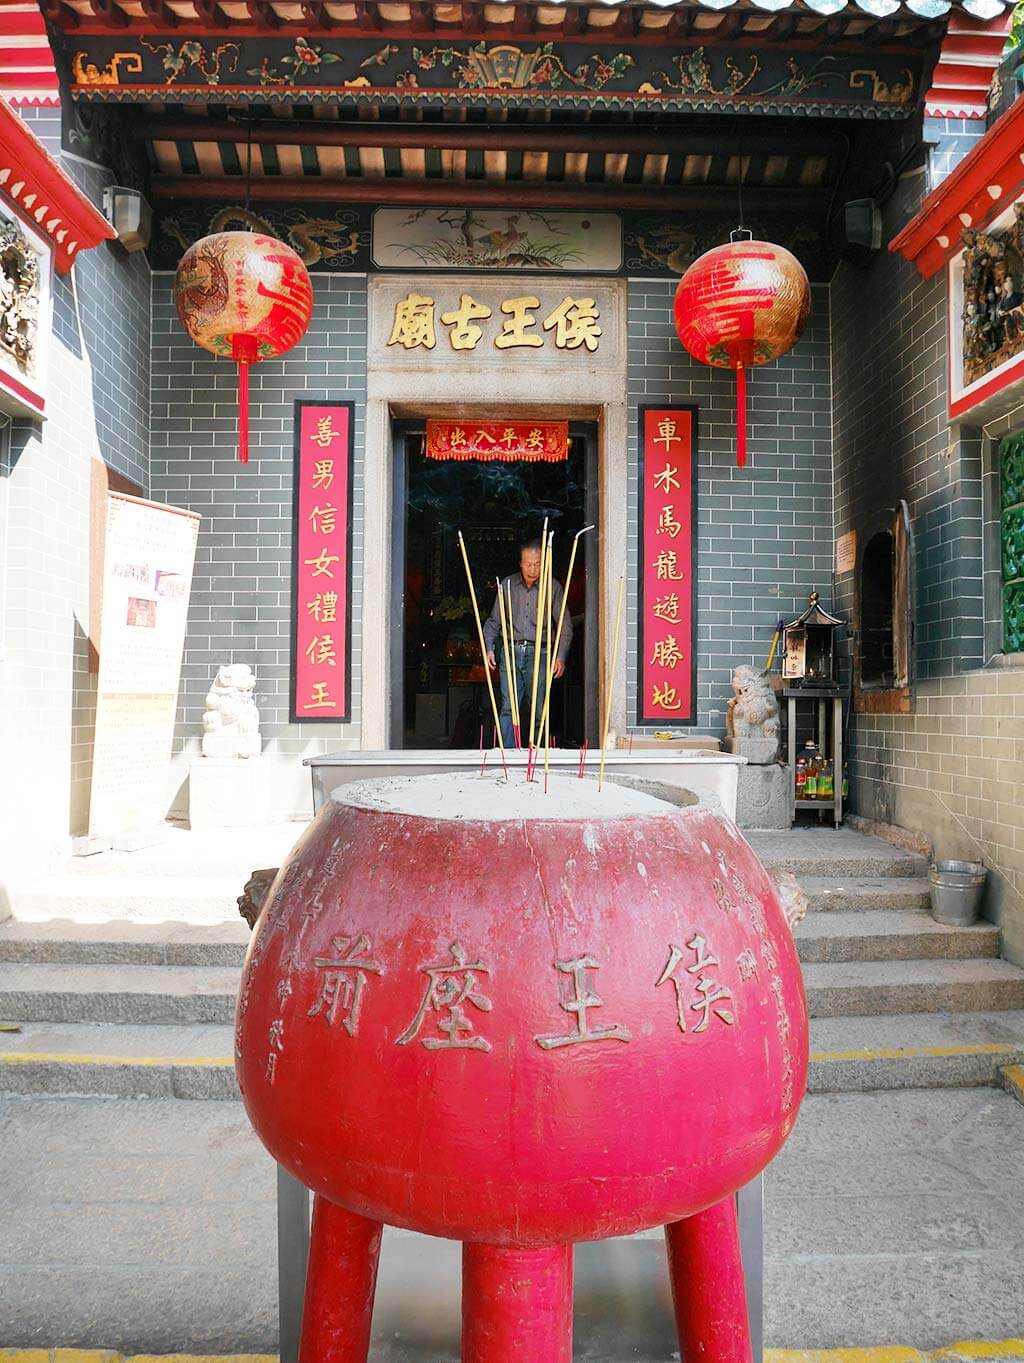 Hau wong temple incense burner, kowloon wall city, Hong Kong | Laugh Travel Eat